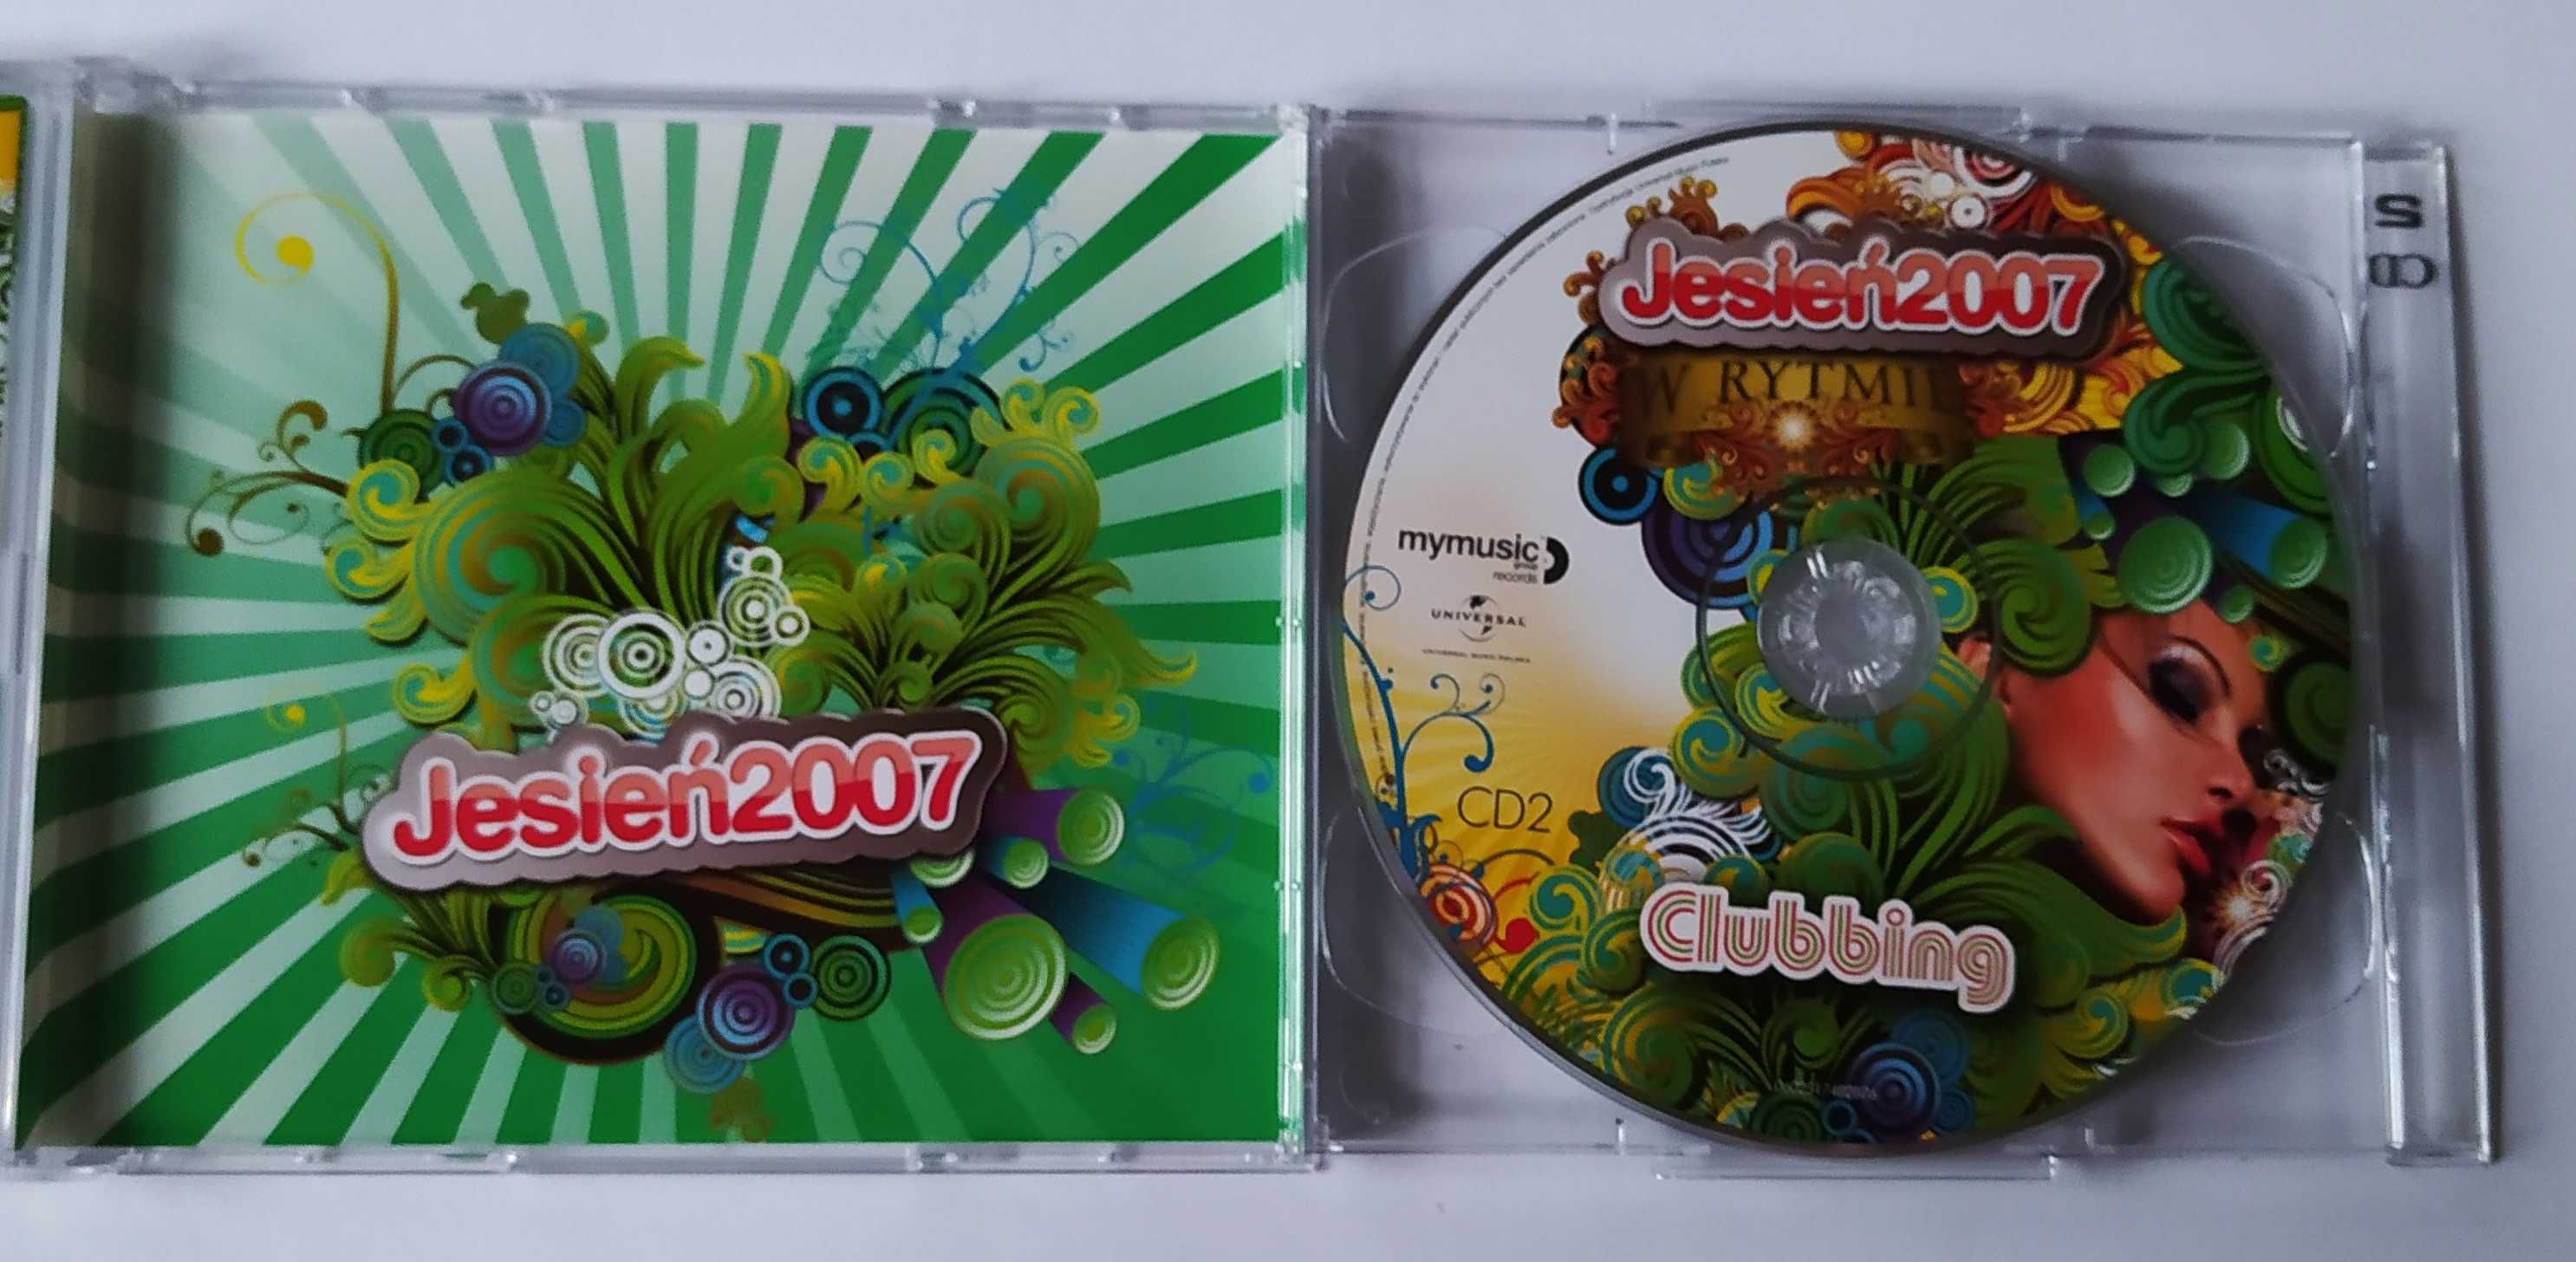 Jesień 2007 W Rytmie Clubbing - 2 CD